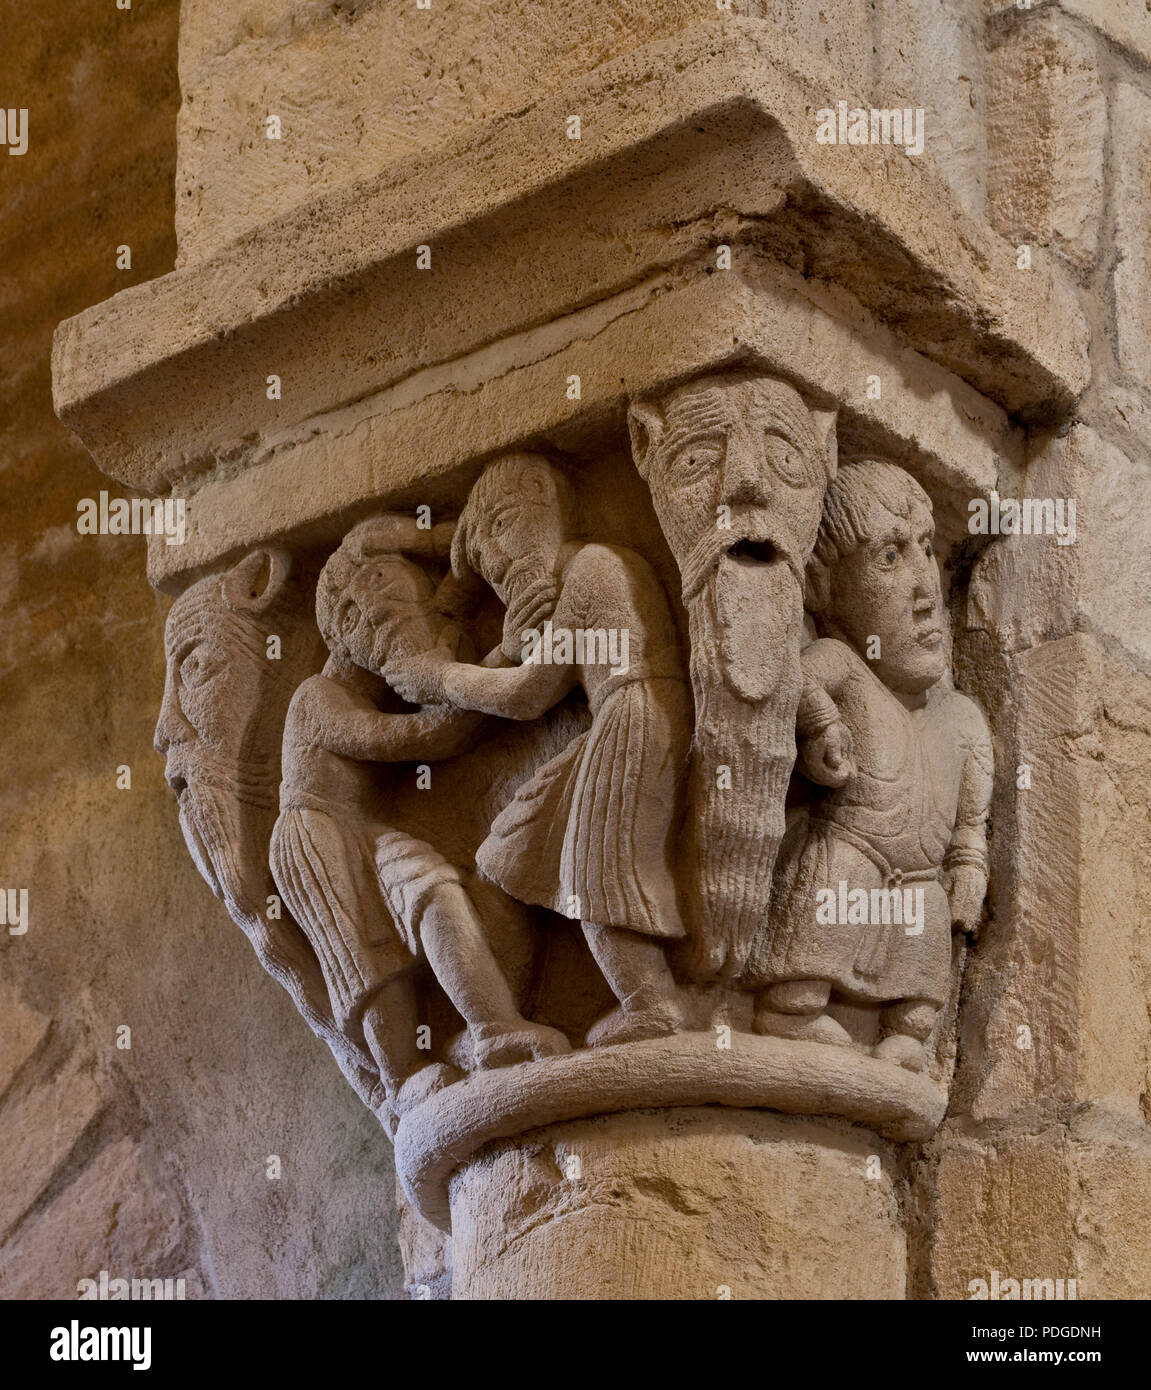 Anzy-le-Duc Burgund. Prioratskirche erbaut 10-11 Jh Figurenkapitell mit raufenden Männern und Fabelwesen Foto Stock